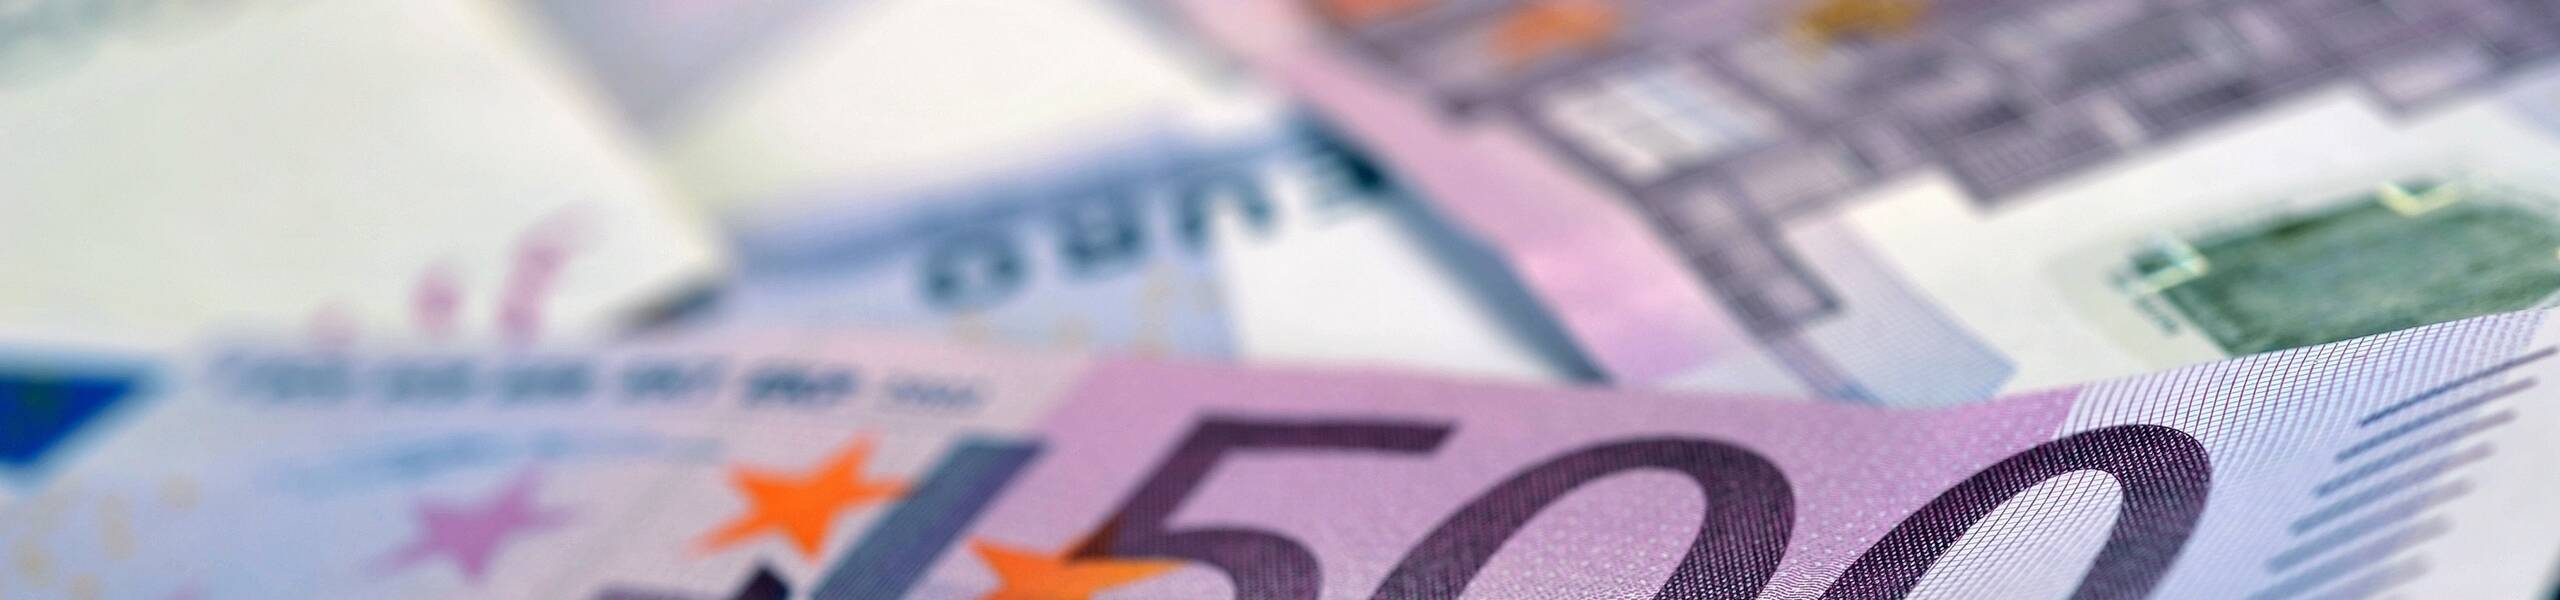 EUR/USD: 'V-Bottom' pushed the market higher